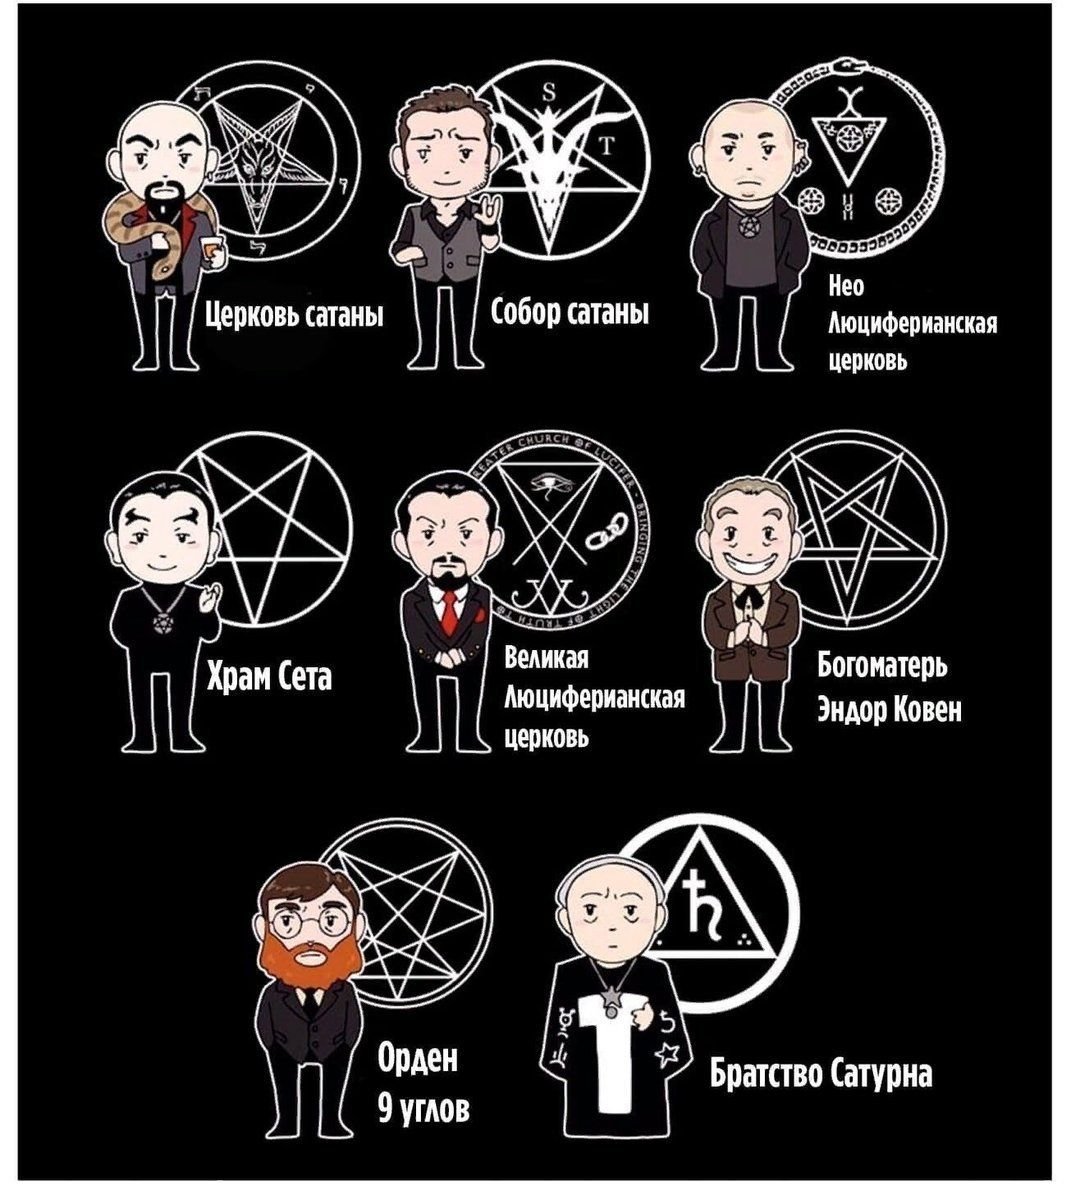 Что обозначает сатана. Пентаграмма. Виды сатанизма. Сатанинские знаки и символы. Шутки про сатанизм.